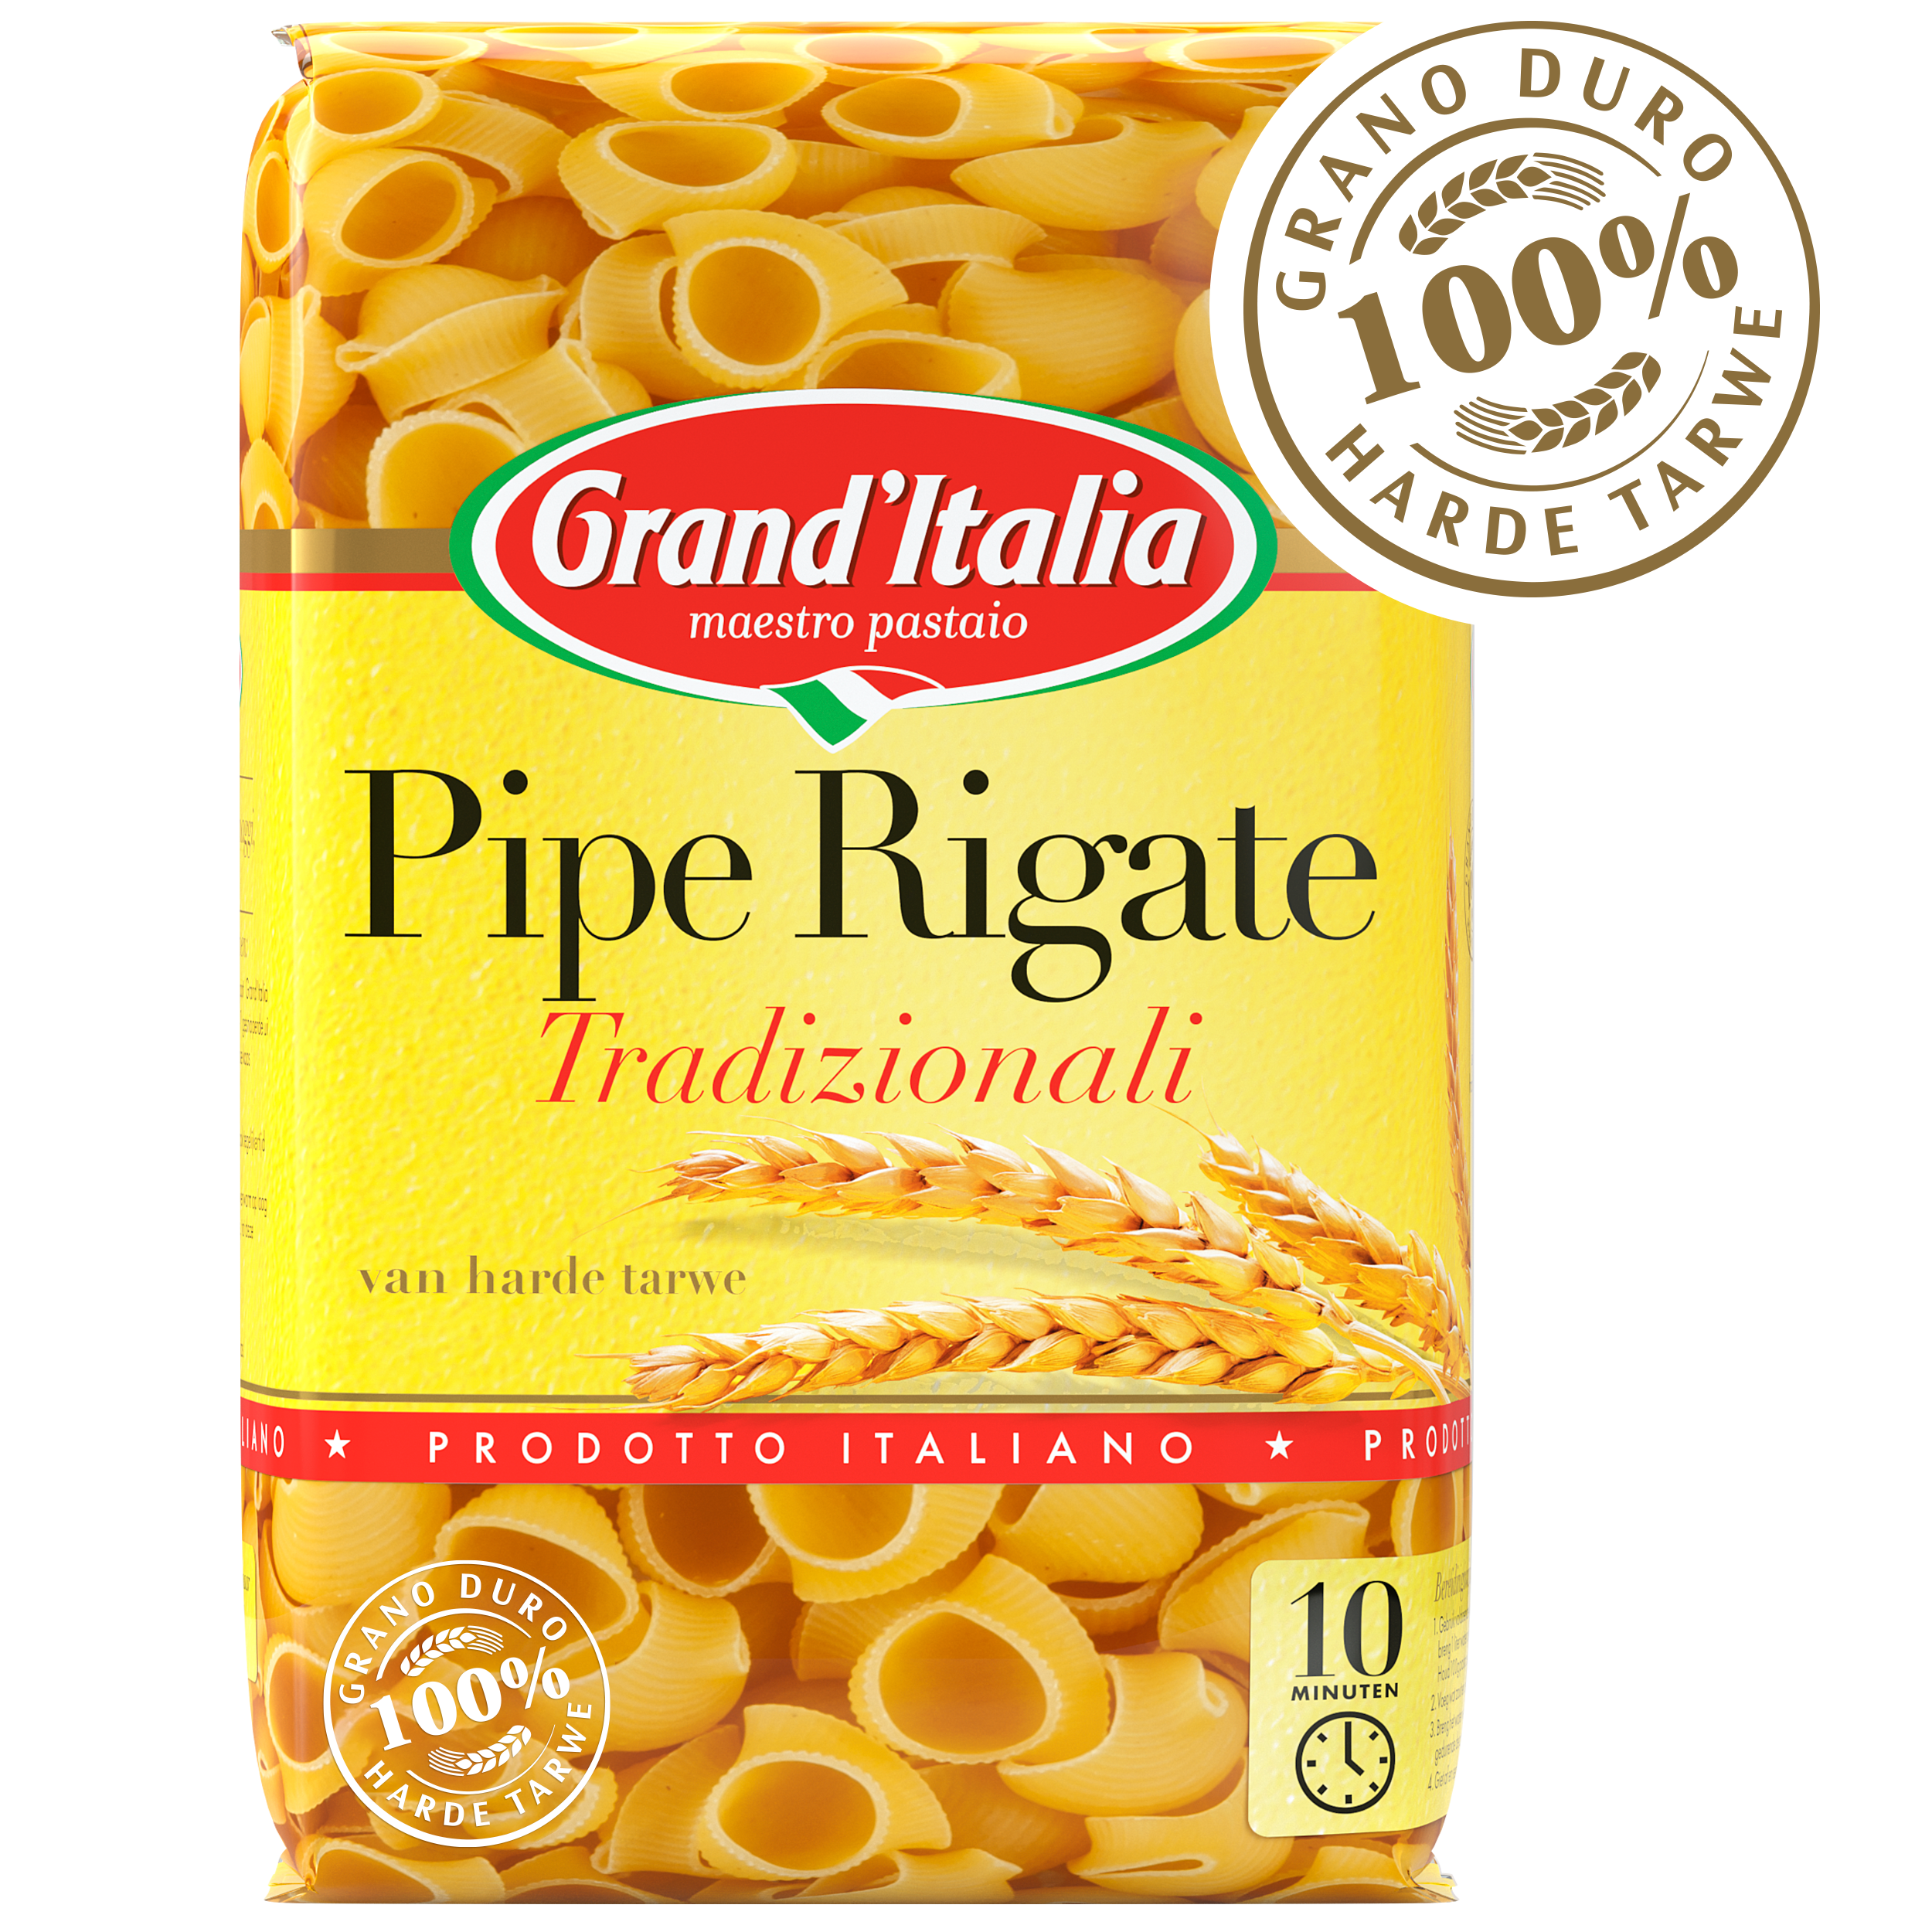 Pasta Pipe Rigate Tradizionali 500g claim Grand'Italia